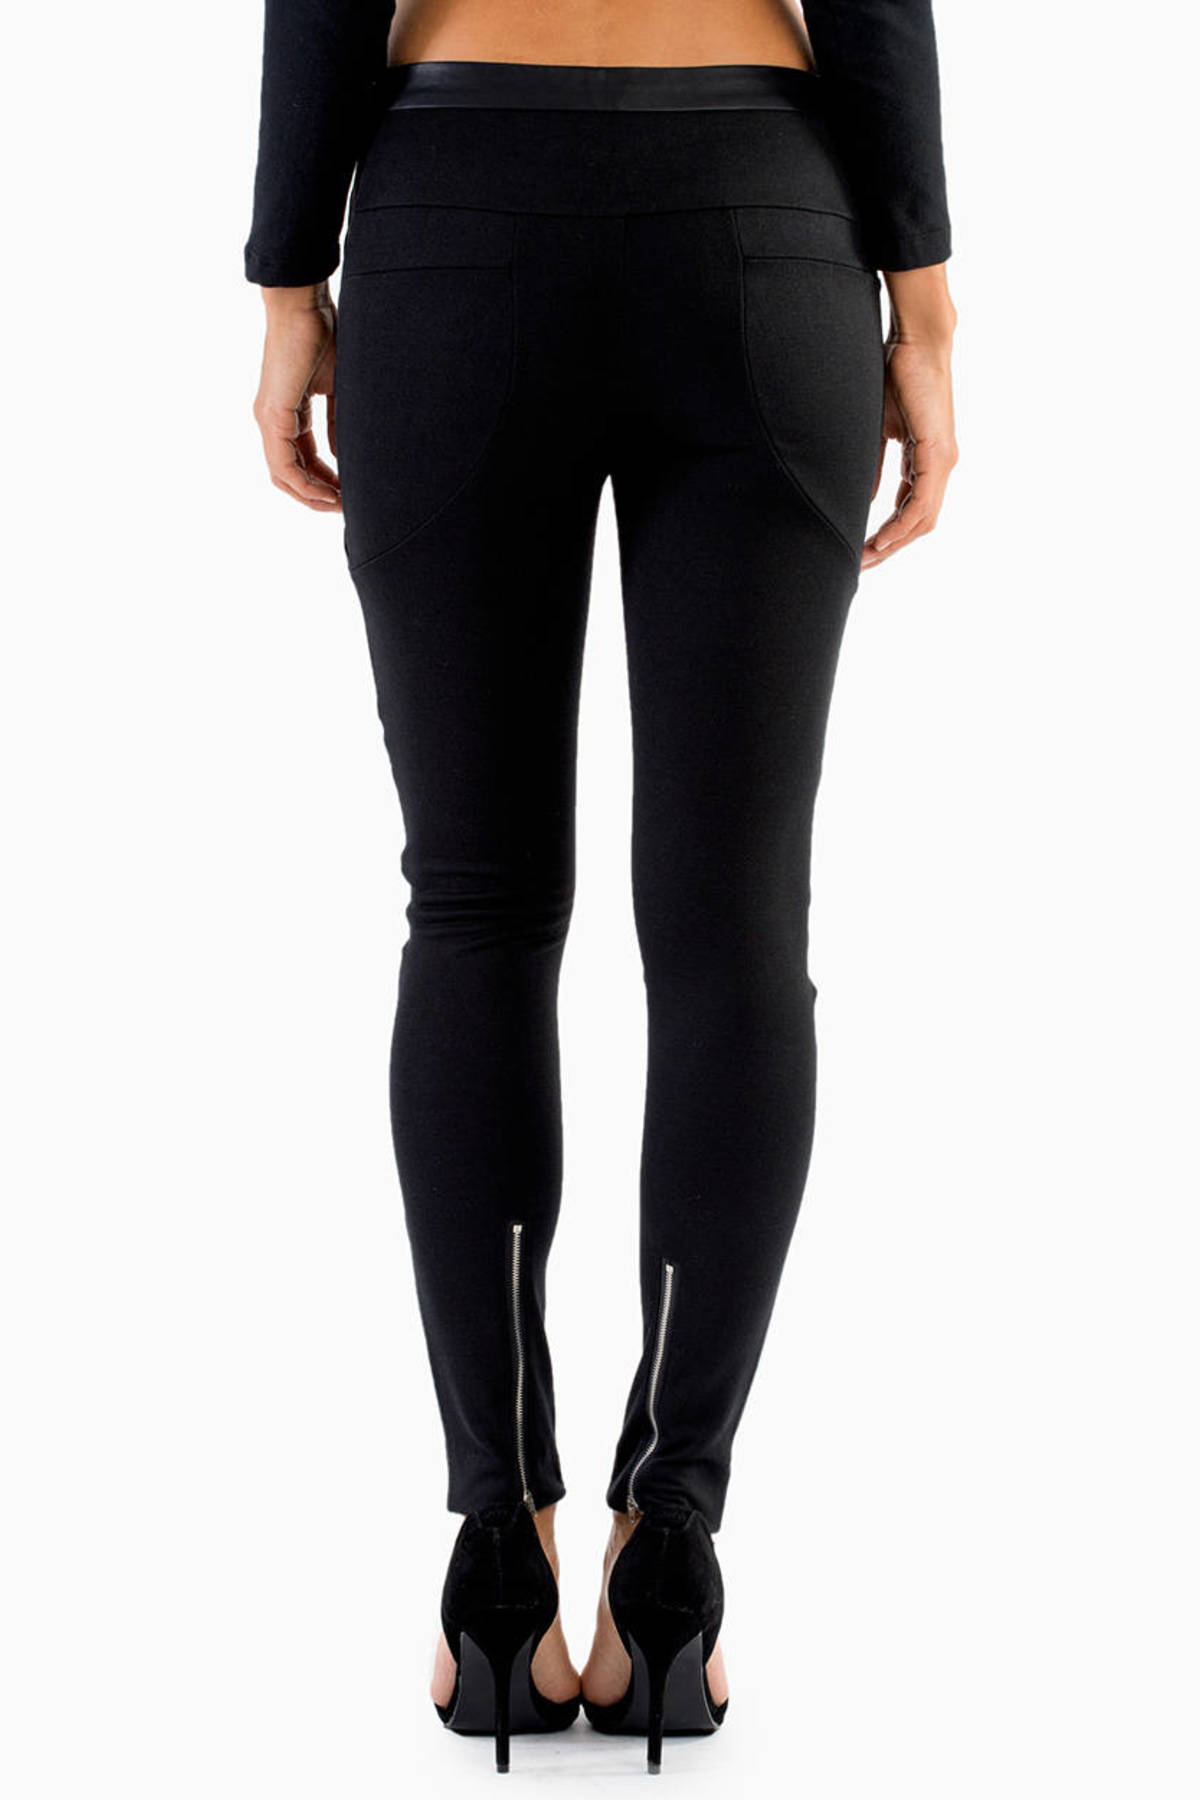 Black Pants - Moto Pants - Black Zip Up Pants - Paneled Pants